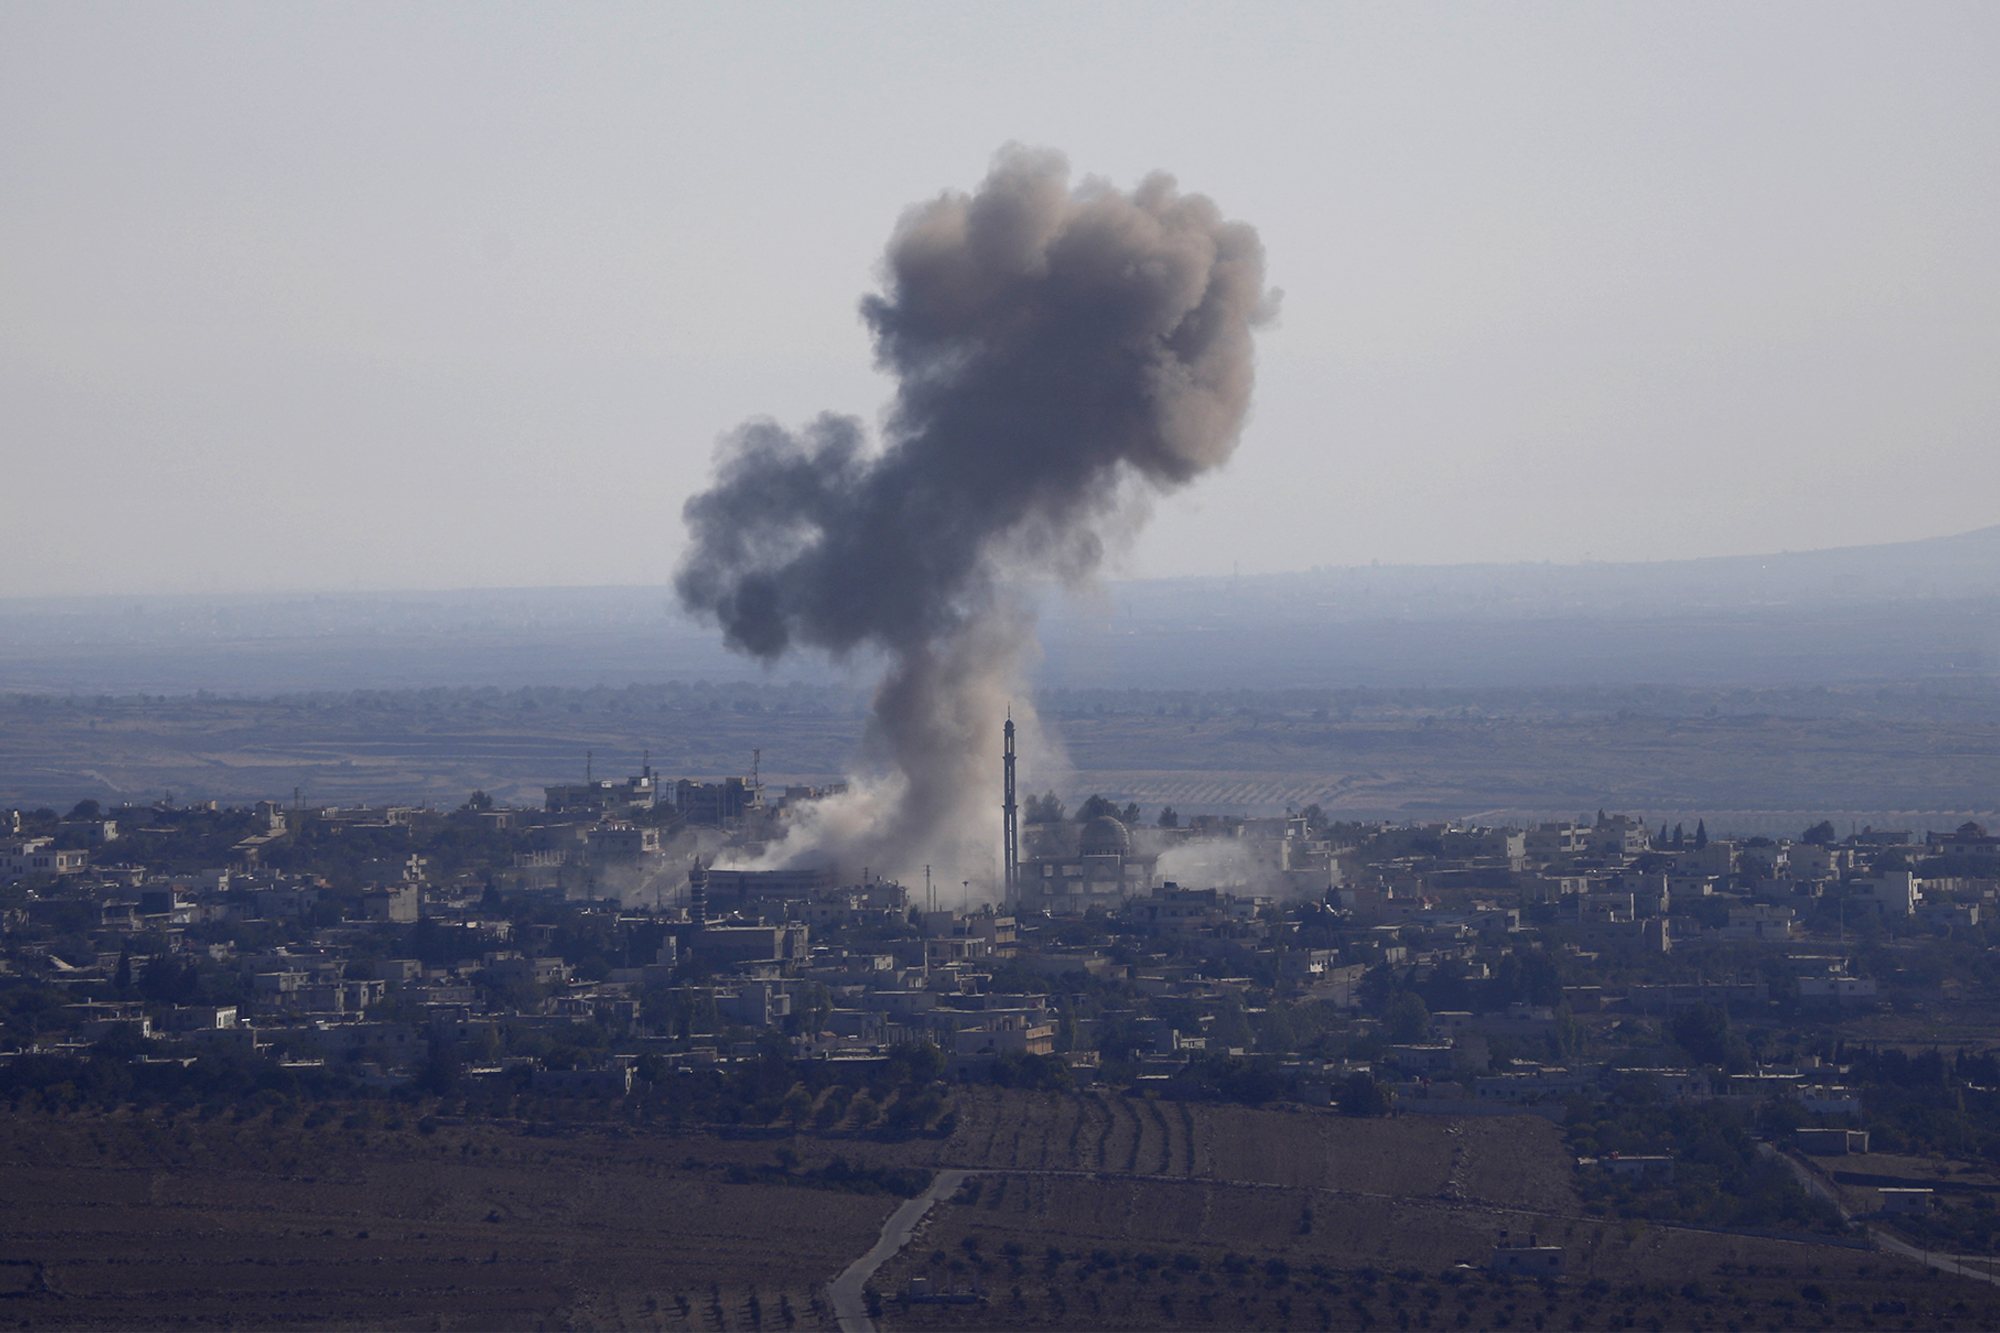 Сайт Bellingcat и агентство Reuters опубликовали снимки российской техники в Сирии, например, разбитых истребителей.